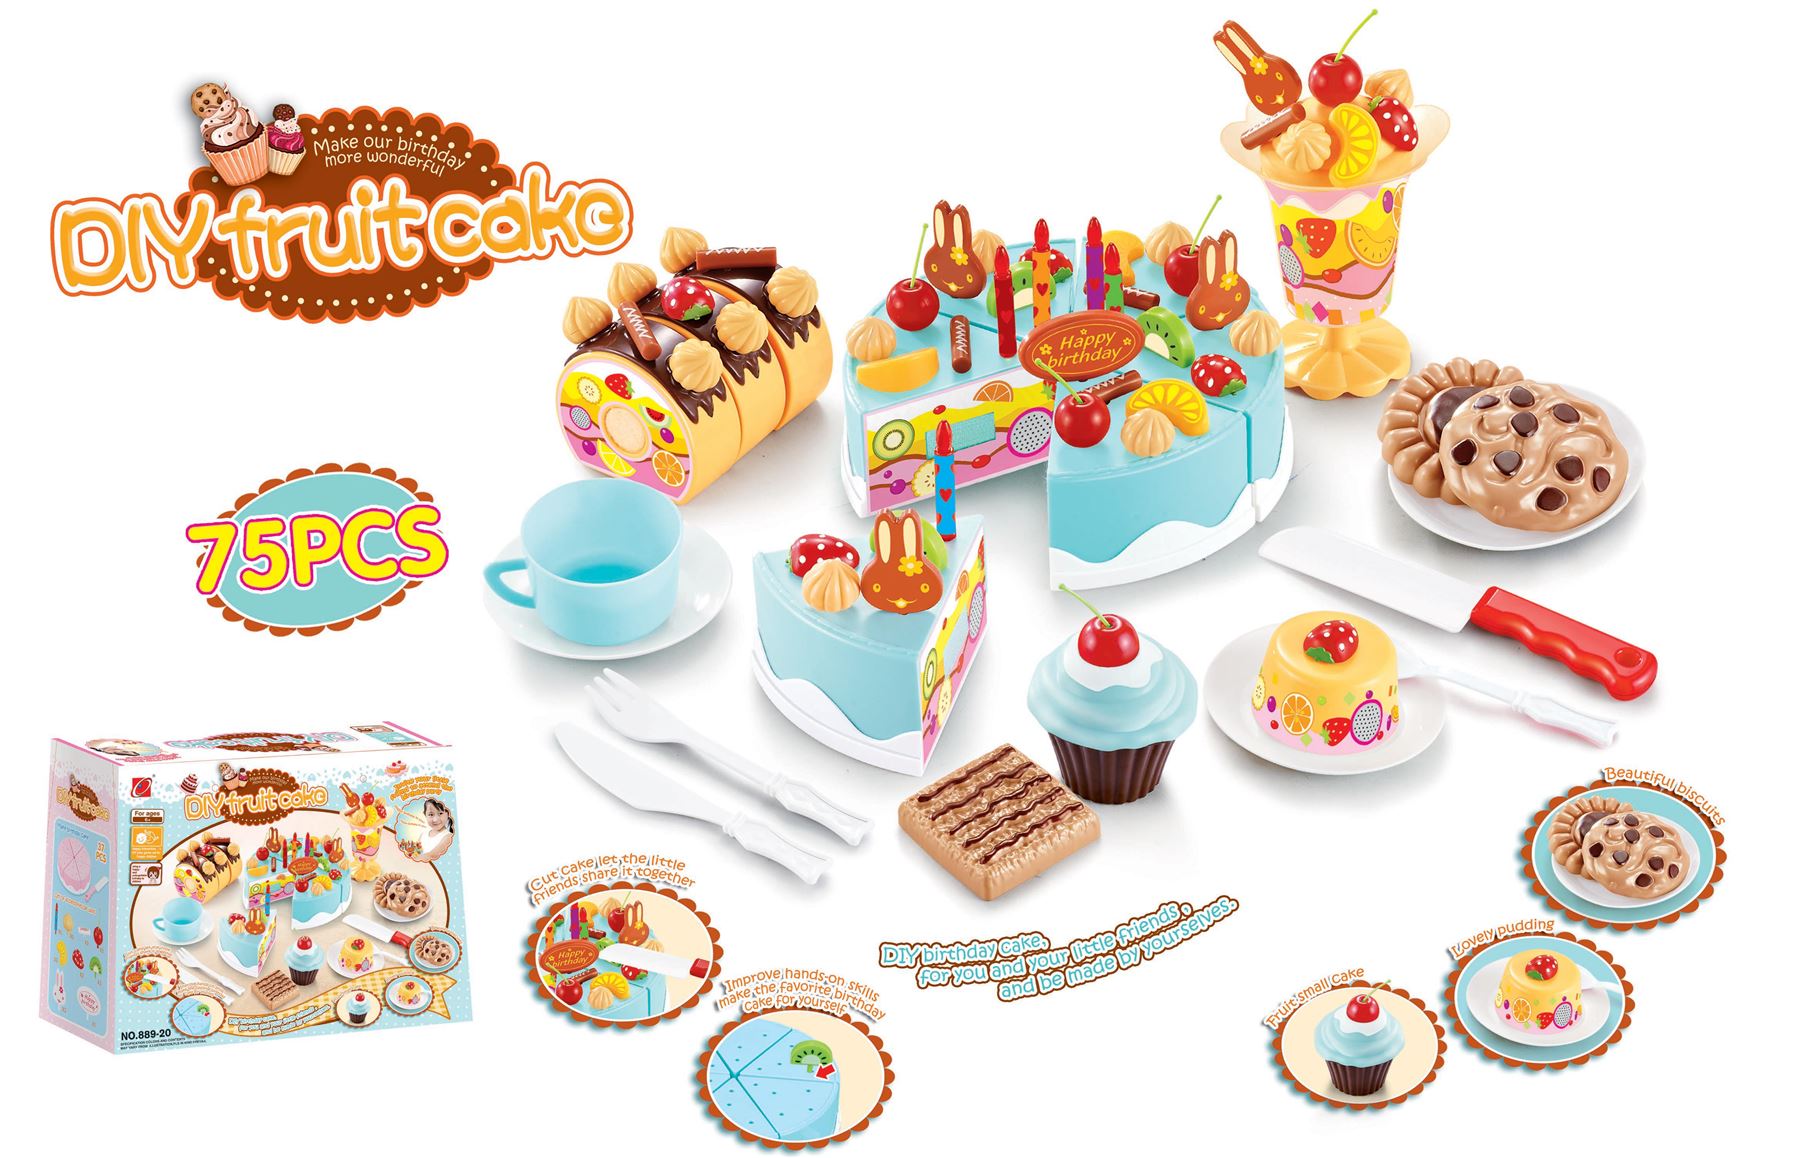 Bērnu rotaļu dzimšanas dienas torte kūka ar 75 piederumiem | Birthday Toy Cake for Children